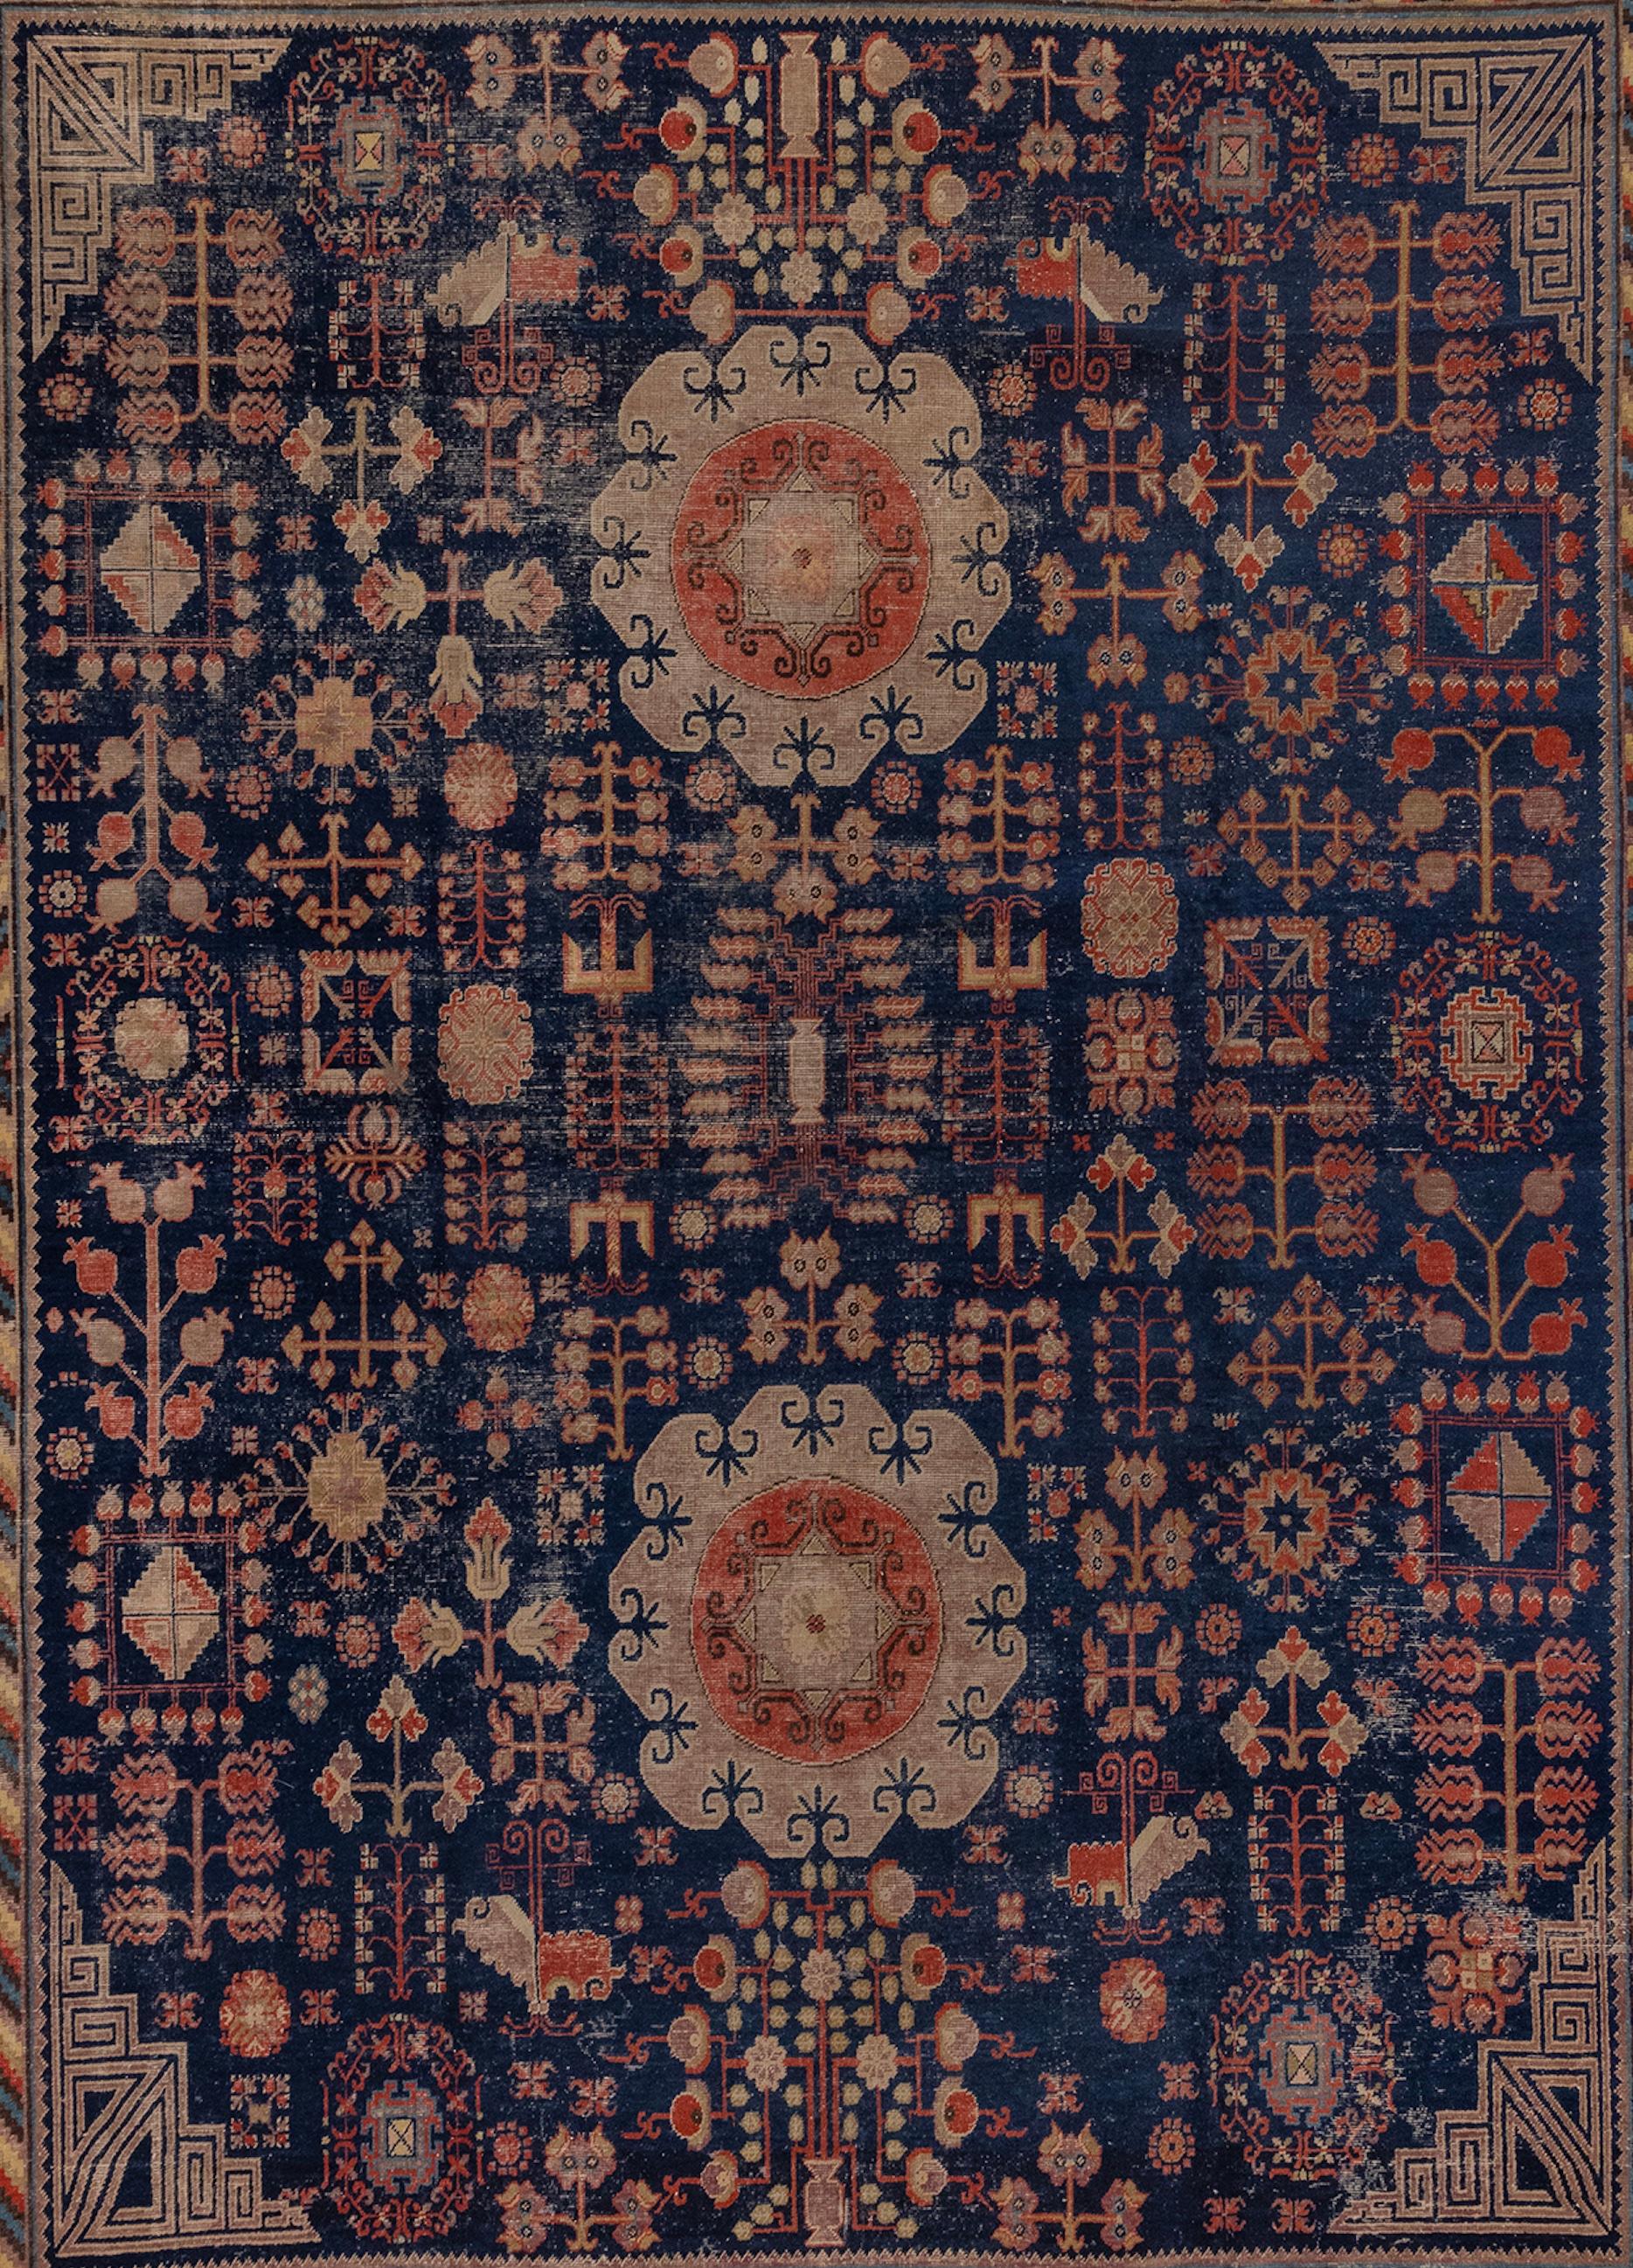 Magnifique tapis Khotan avec des médaillons uniques et un motif d'arbre de vie. La bordure est joliment détaillée avec des rayures colorées et des symboles de grenade. Il s'agit d'un grand tapis, rare pour ce style de Khotan.